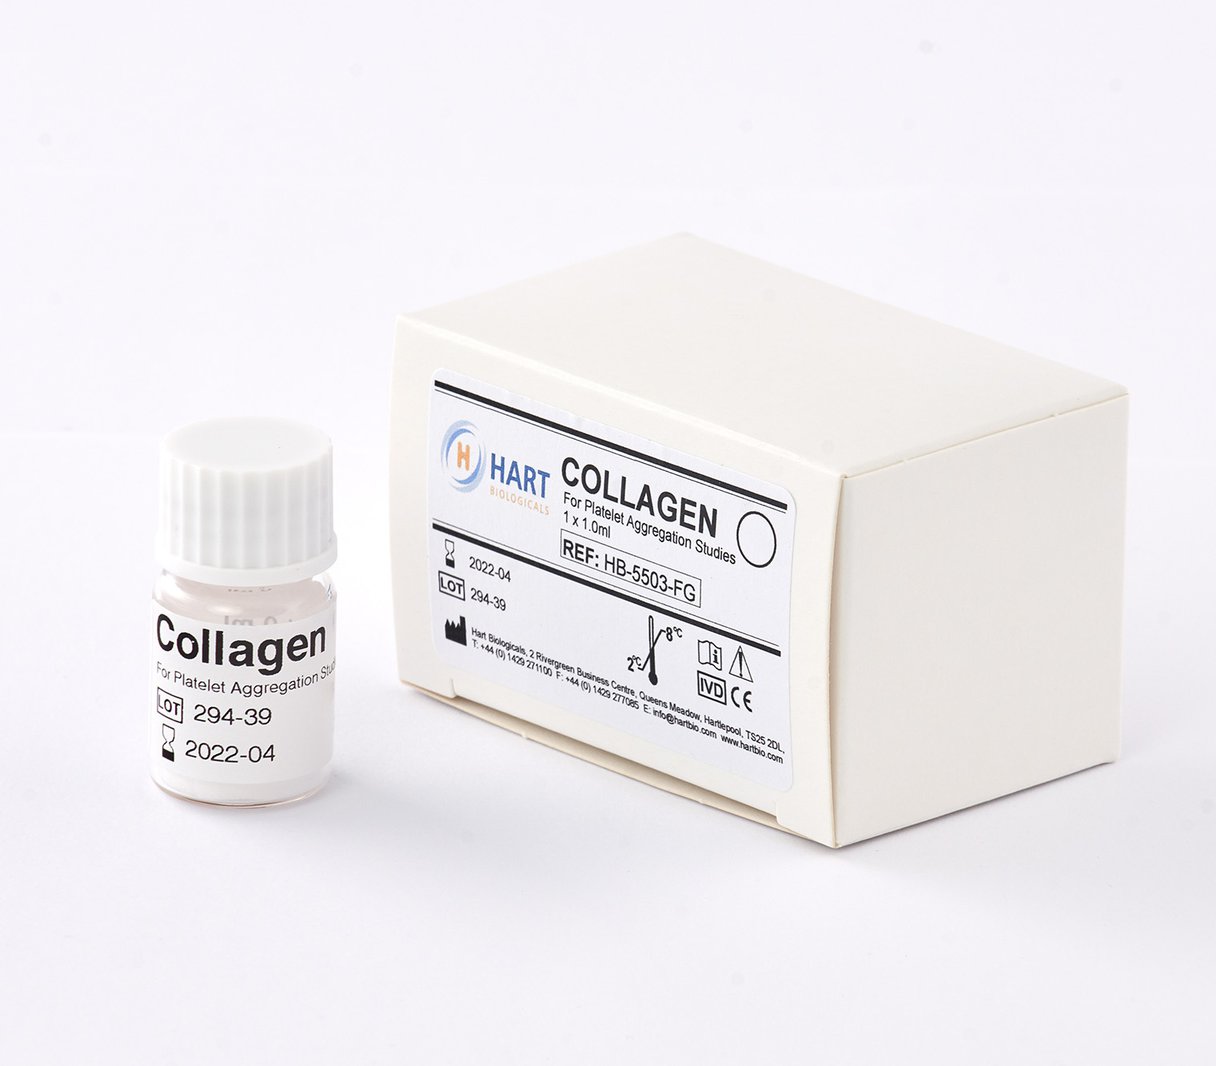 Collagen 100ug/ml - 1 x 1.0ml